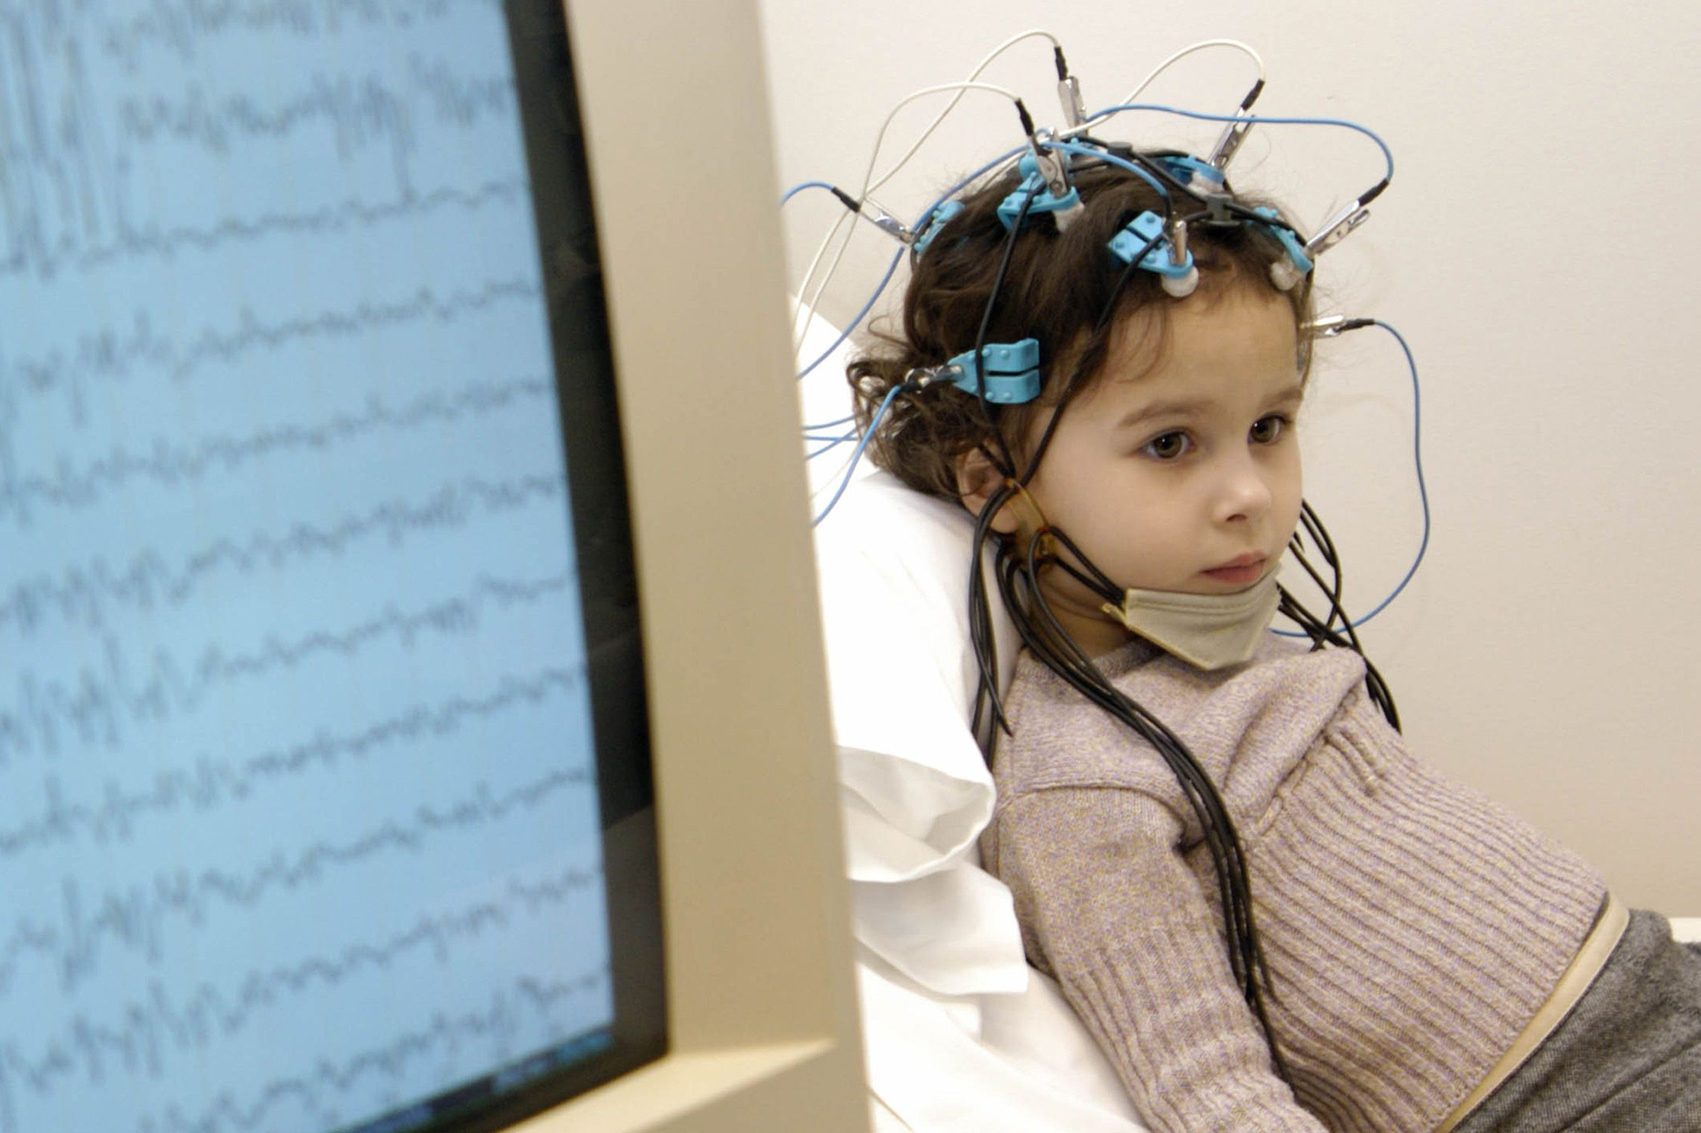 Бесплатный эпилептолог. ЭЭГ детям. Развитие мозга. Ребенок ученый.